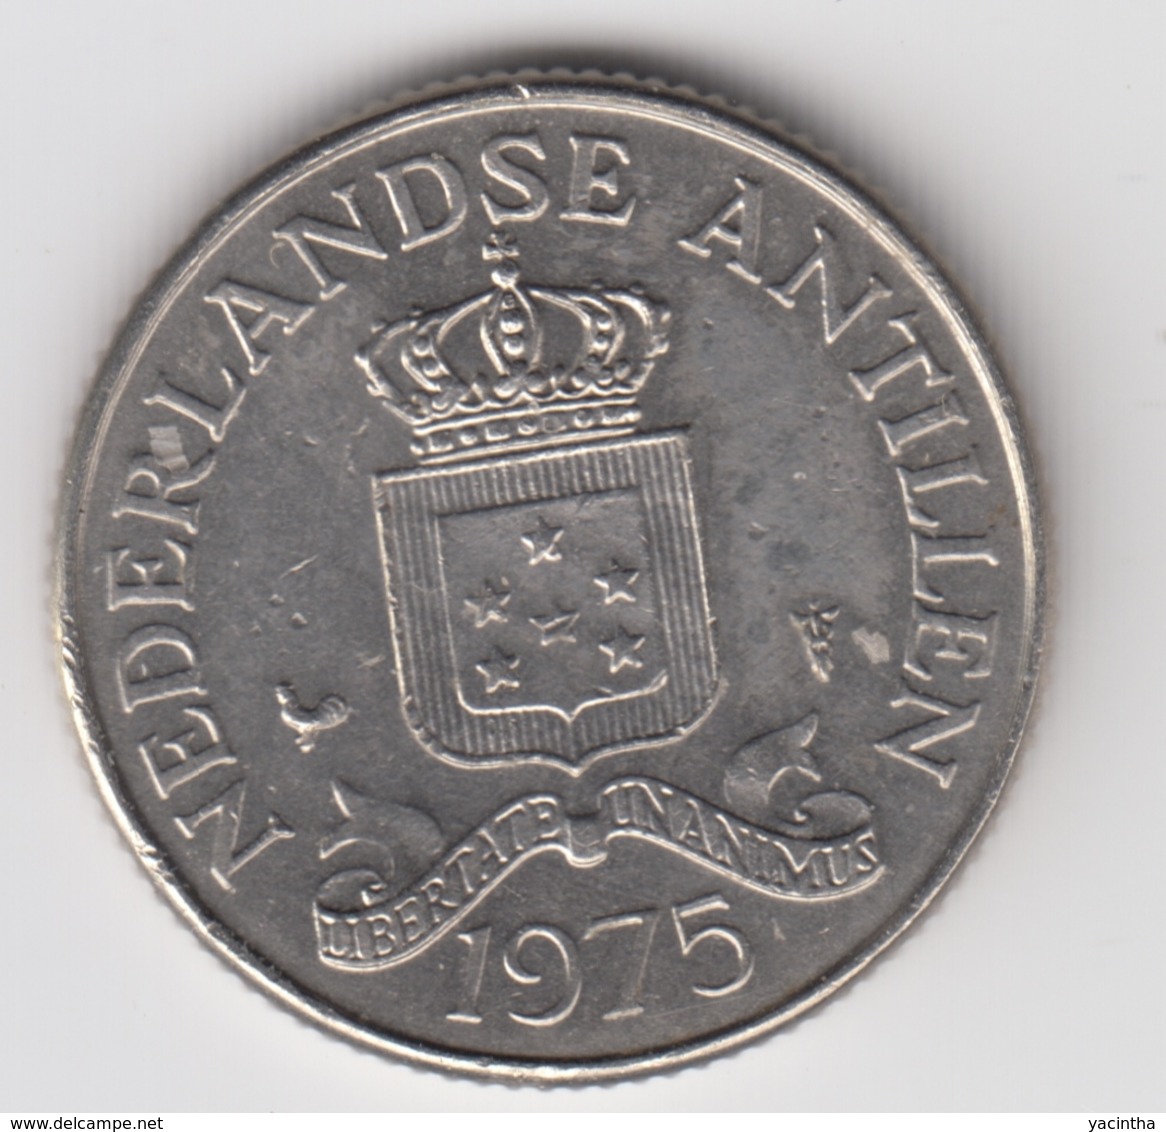 @Y@    Nederlandse Antillen   25  Cent  1975 ( 4687 ) - Antille Olandesi